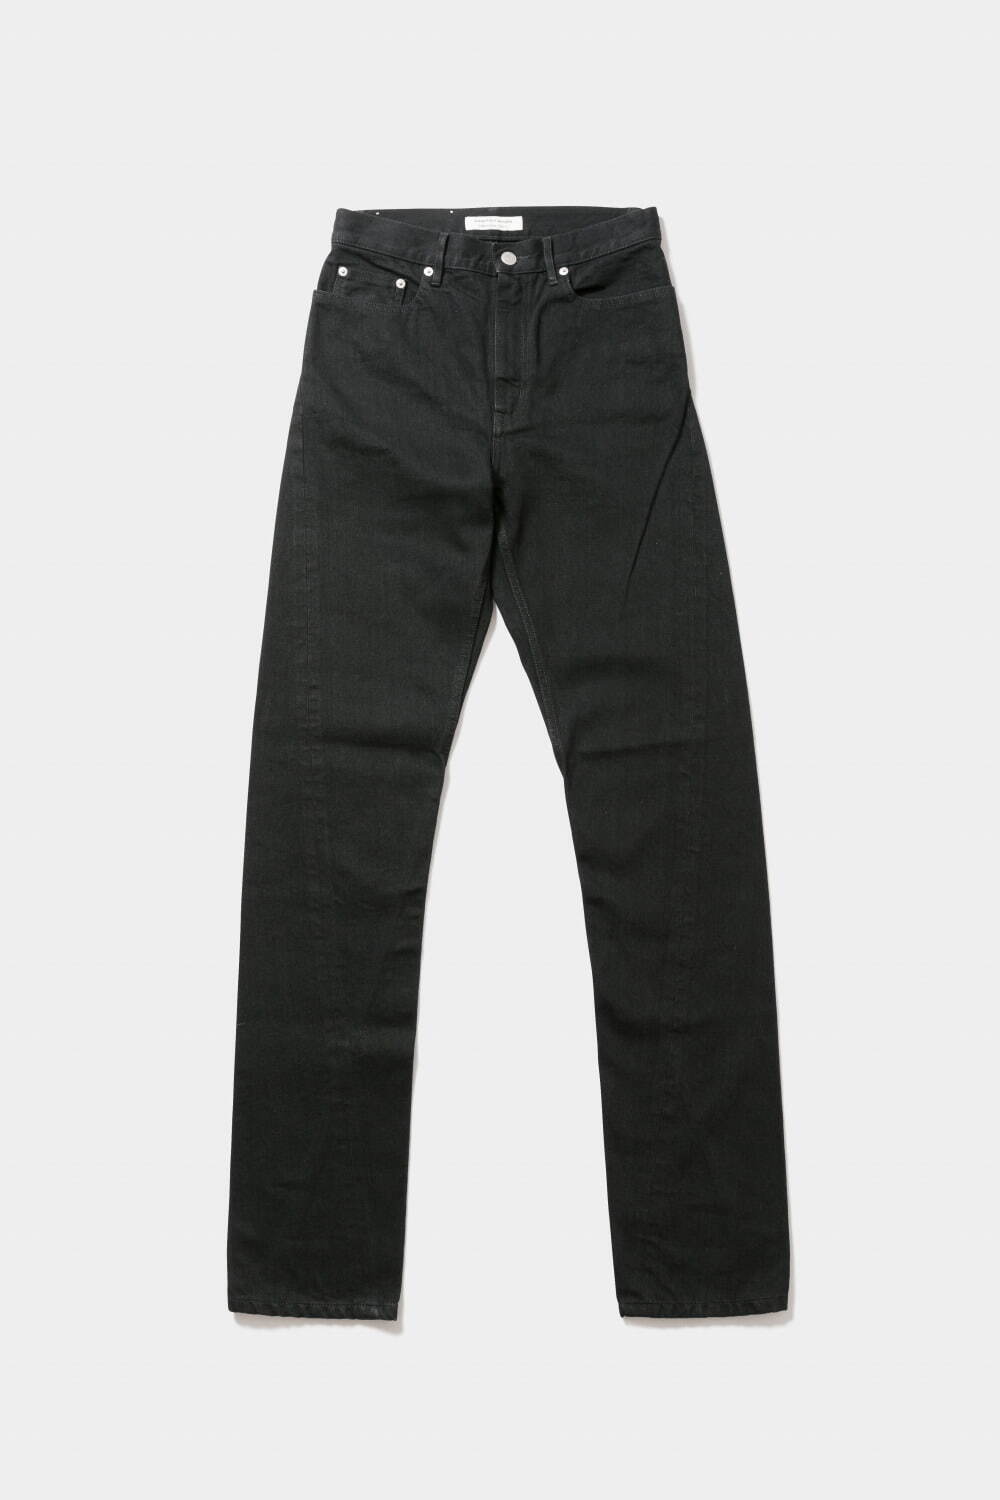 selvedge denim bias skinny pants 38,500円